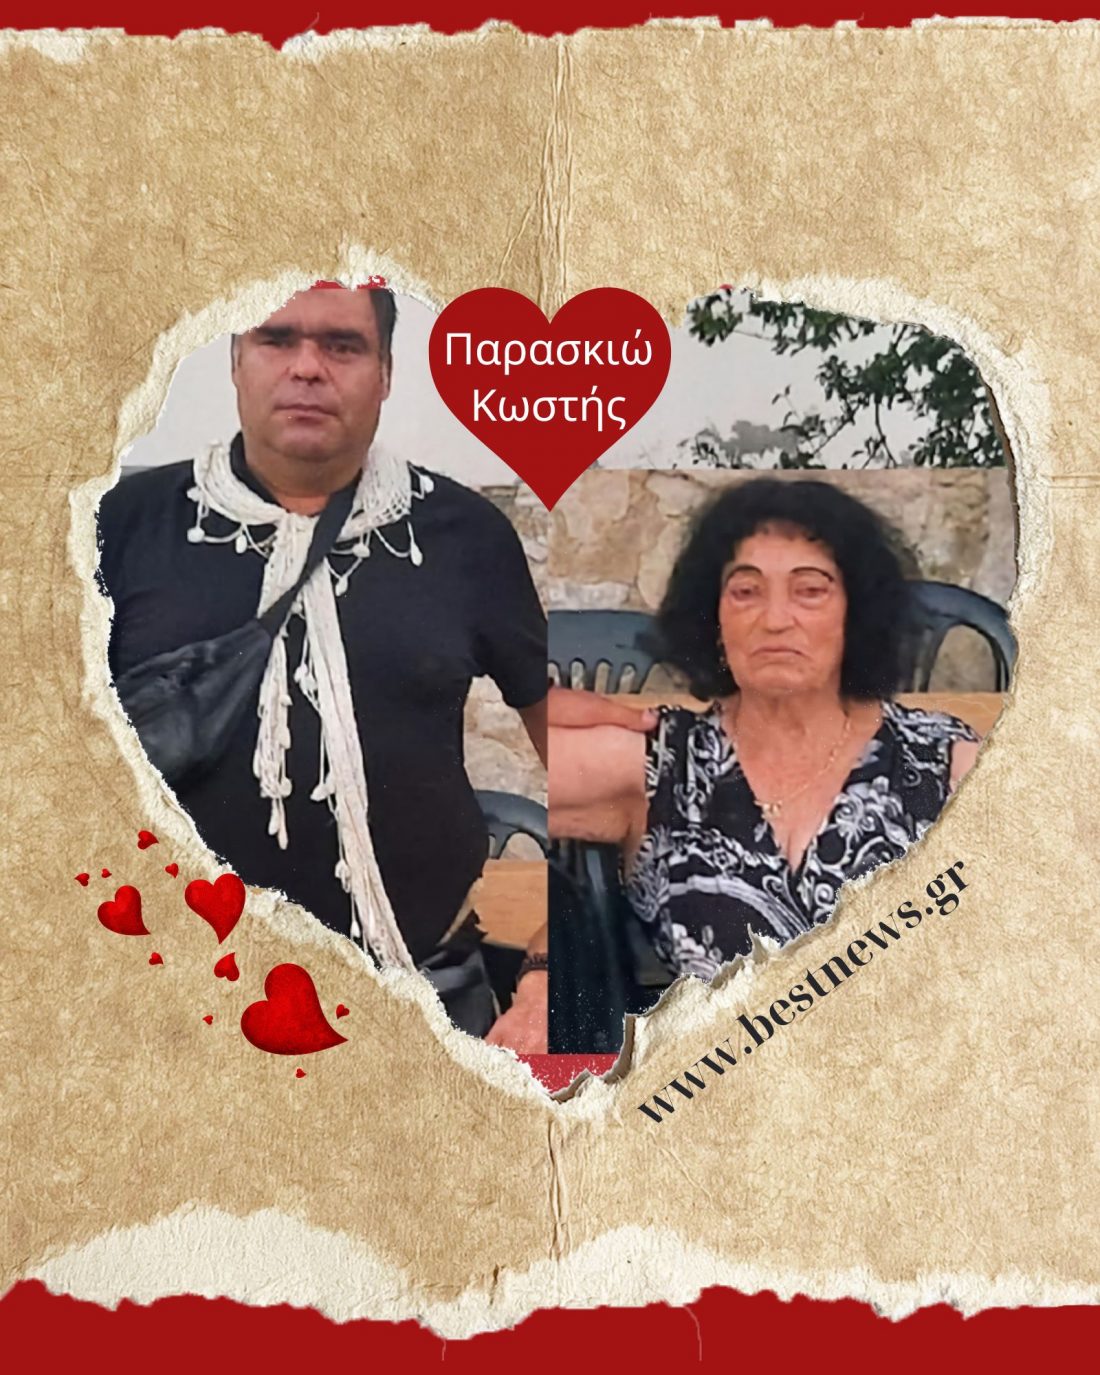 Η 82χρονη Παρασκιώ και ο 41χρονος Κωστής από την Κρήτη αποδεικνύουν πως ο έρωτας χρόνια δεν κοιτά